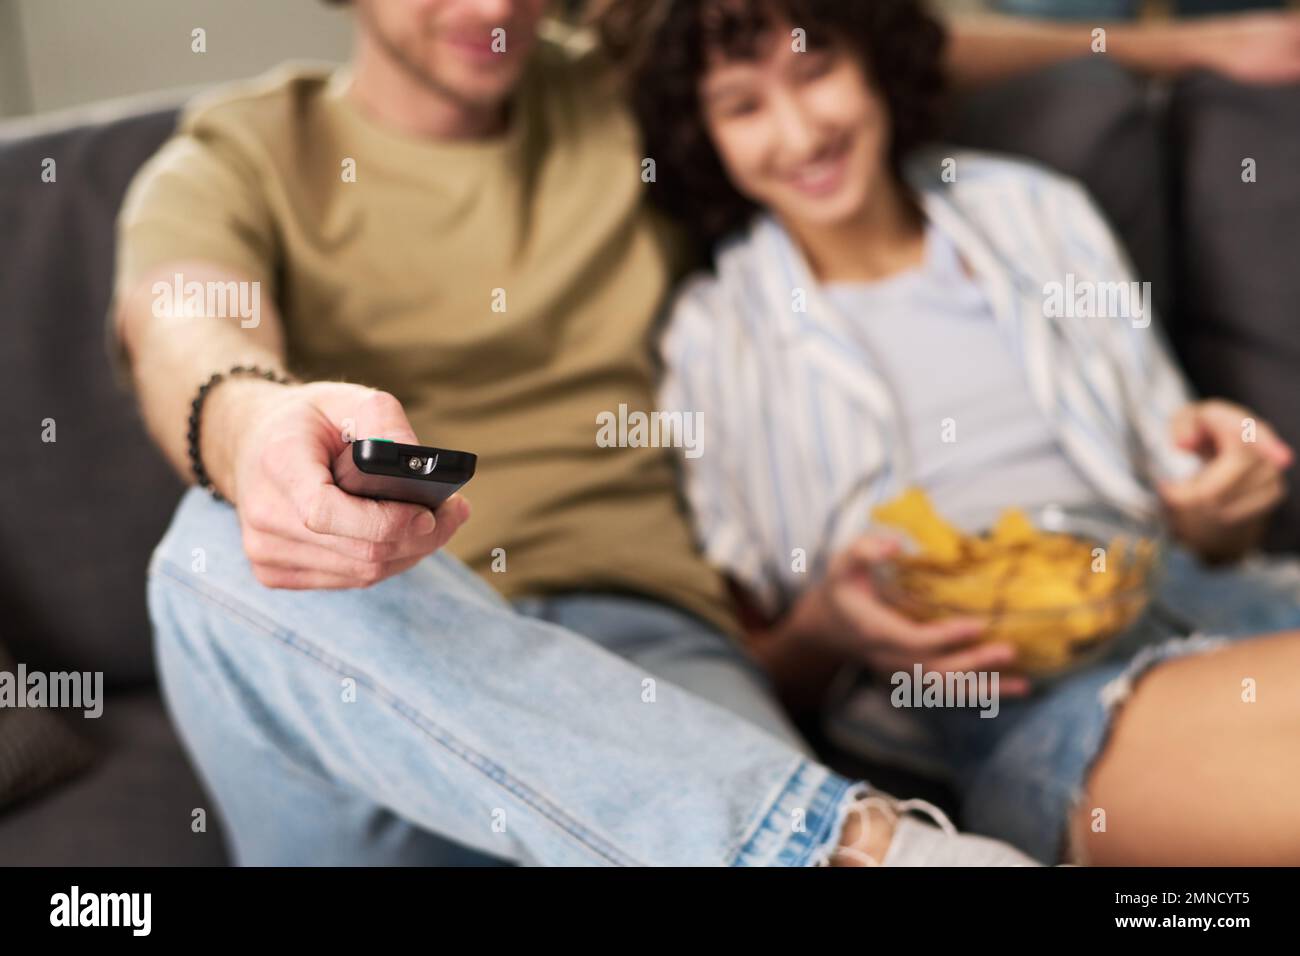 Concéntrese en la mano del joven hombre tranquilo que sostiene el control remoto mientras se sienta al lado de su esposa con patatas fritas y elige el canal de televisión Foto de stock